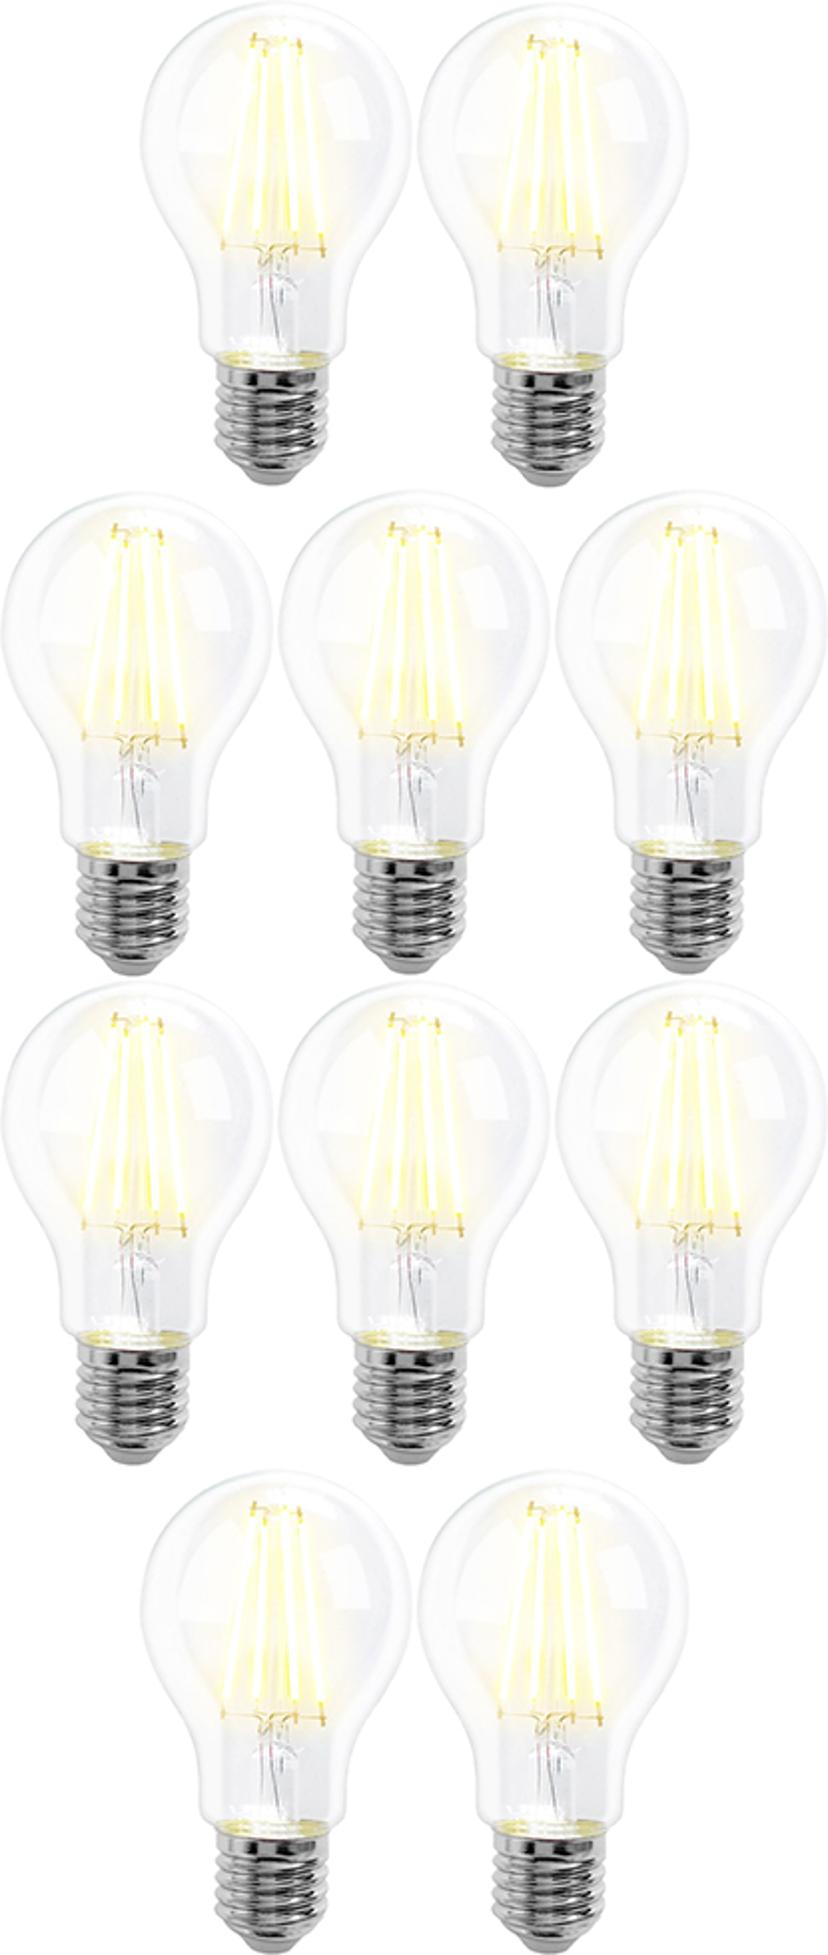 Prokord Smart Home Bulb E27 8W Warmwhite 10-Pack